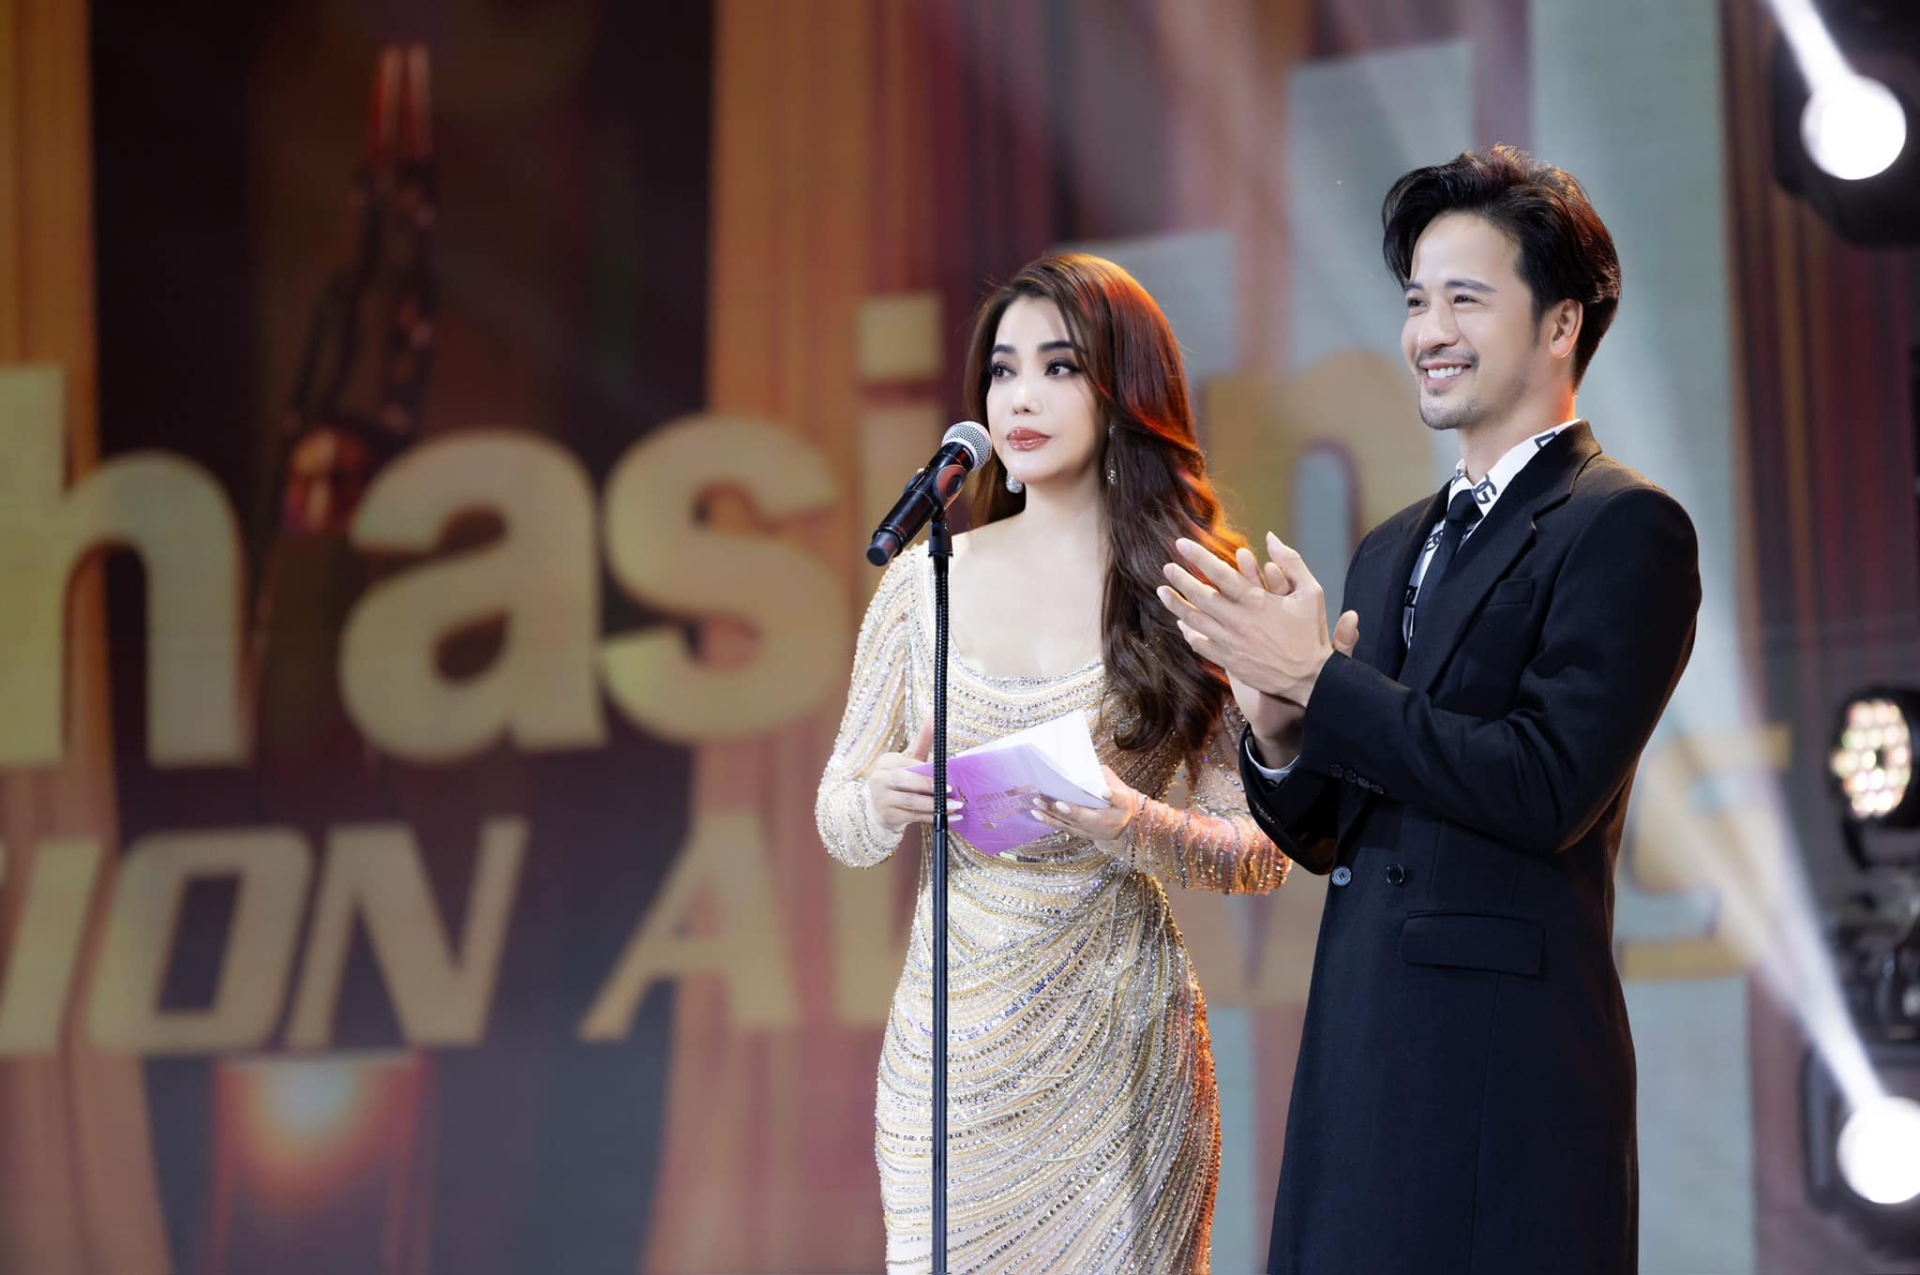 Đoàn Minh Tài sánh đôi cùng Trương Ngọc Ánh, Ngọc Thanh Tâm đại diện trao giải tại sự kiện ATA Asian Television Awards - ảnh 4